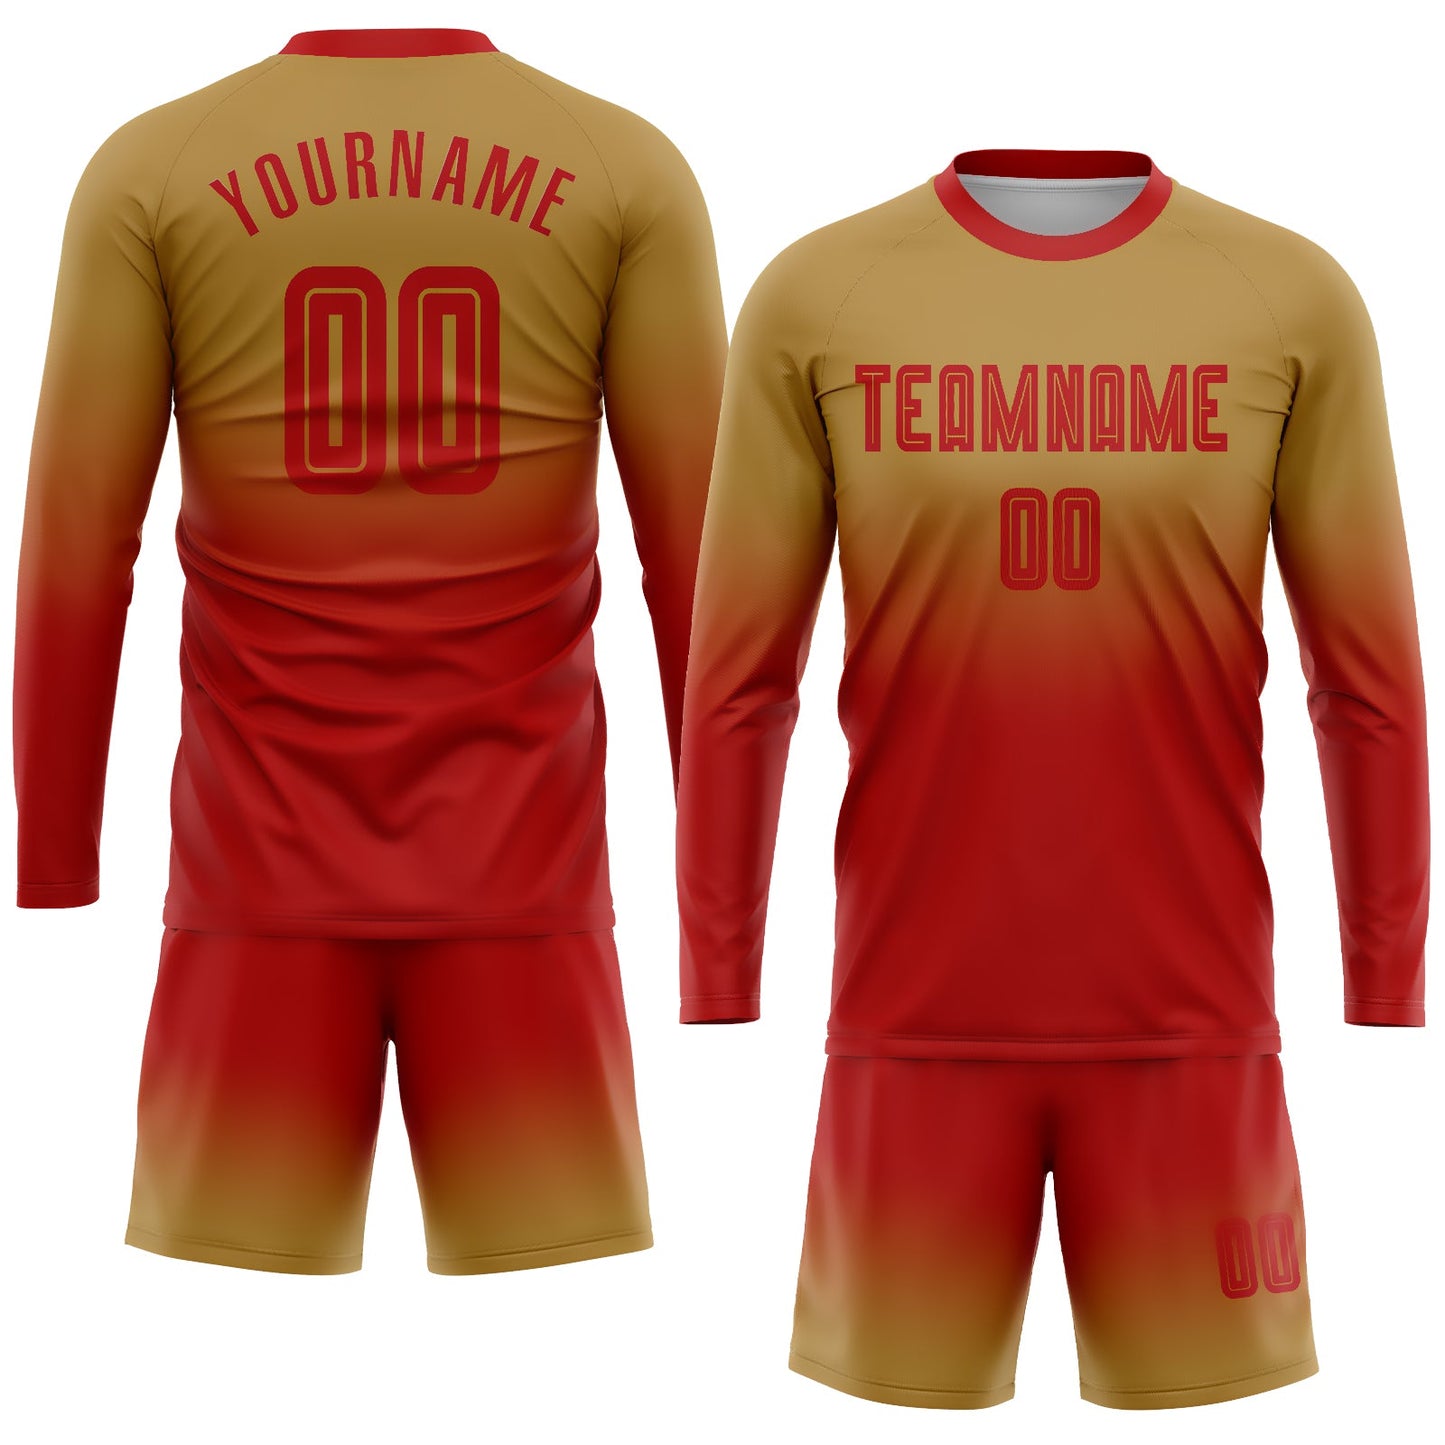 Maillot d'uniforme de football à manches longues, personnalisé, vieux or, rouge, Sublimation, fondu, mode, uniforme de football